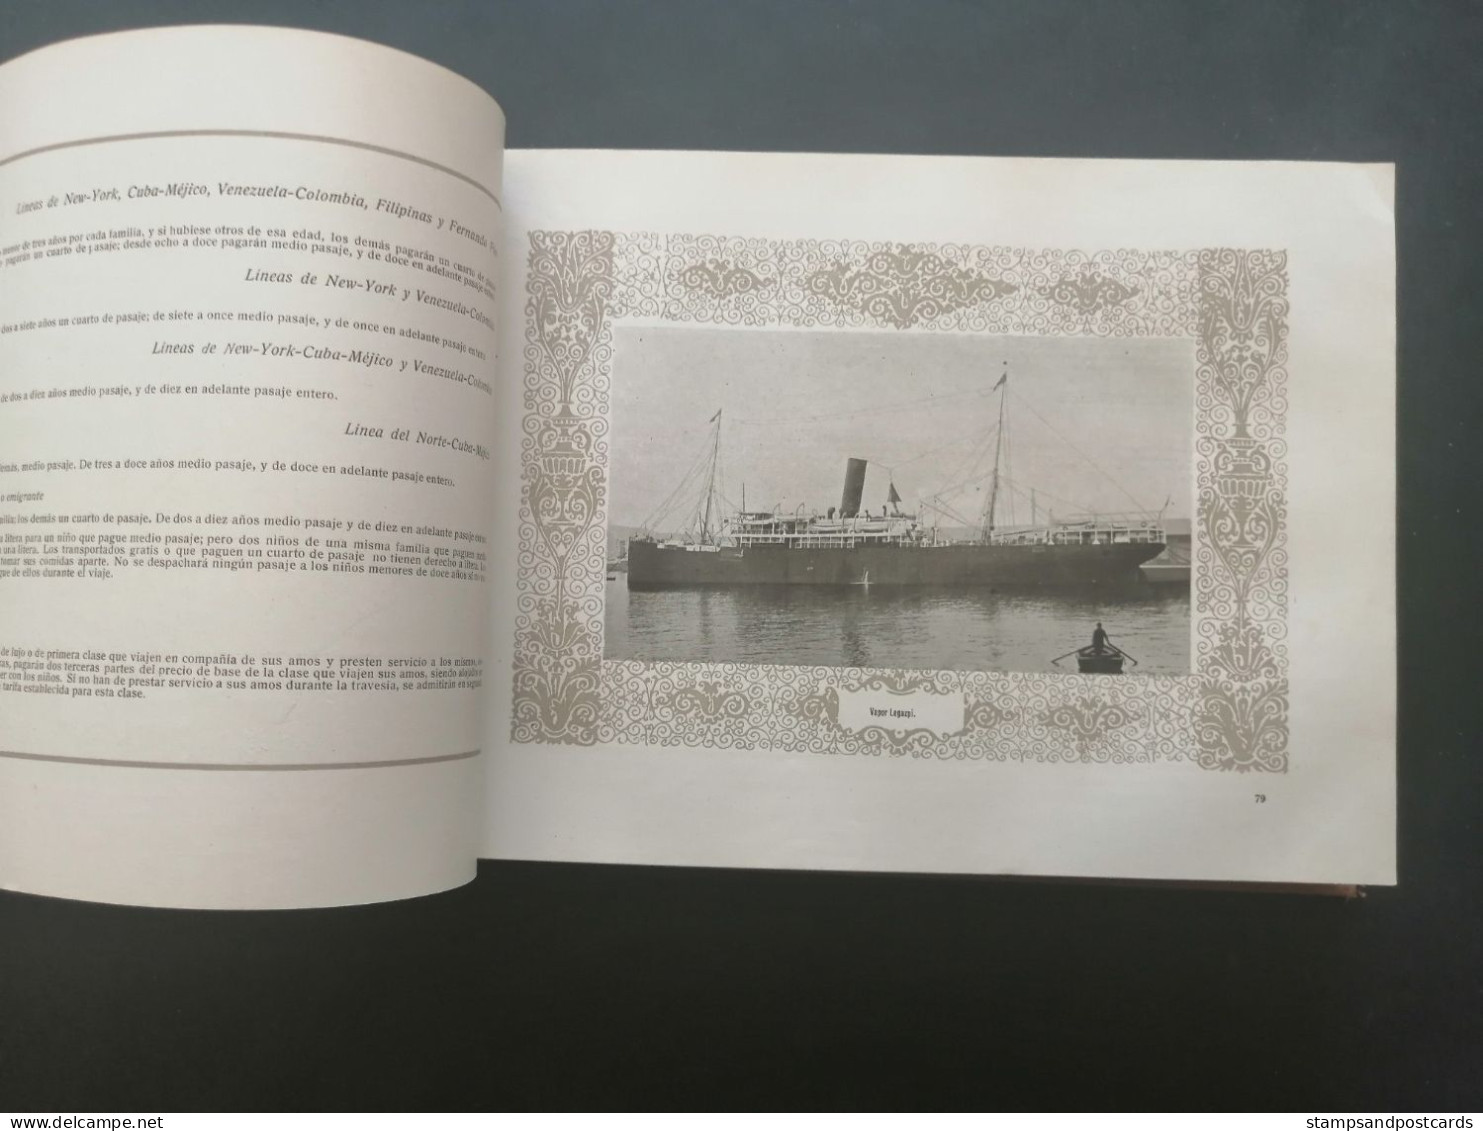 Compañía Trasatlántica Libro de información 1920 Barcelona Catalonia España Spain shipping company handbook Paquebot